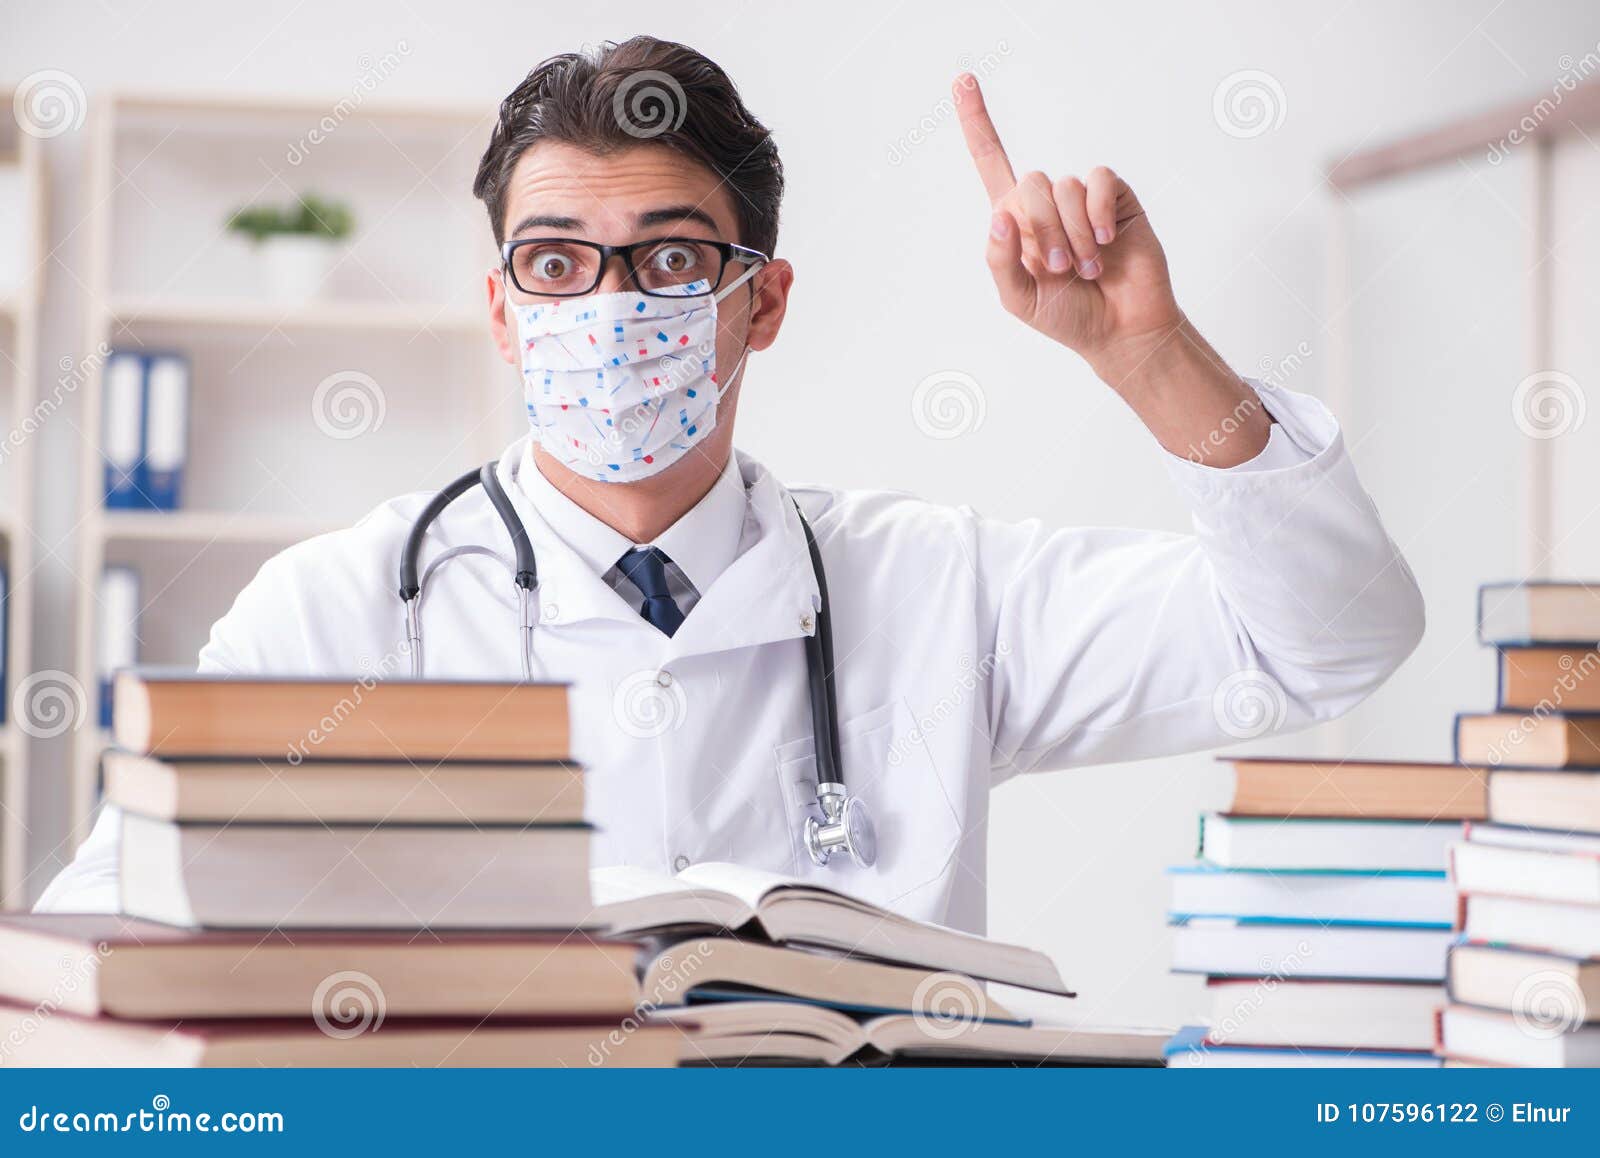 Exam kz. Стресс студента медика. Студенты медики. Студент медик с книгами. Задумчивый студент медик.